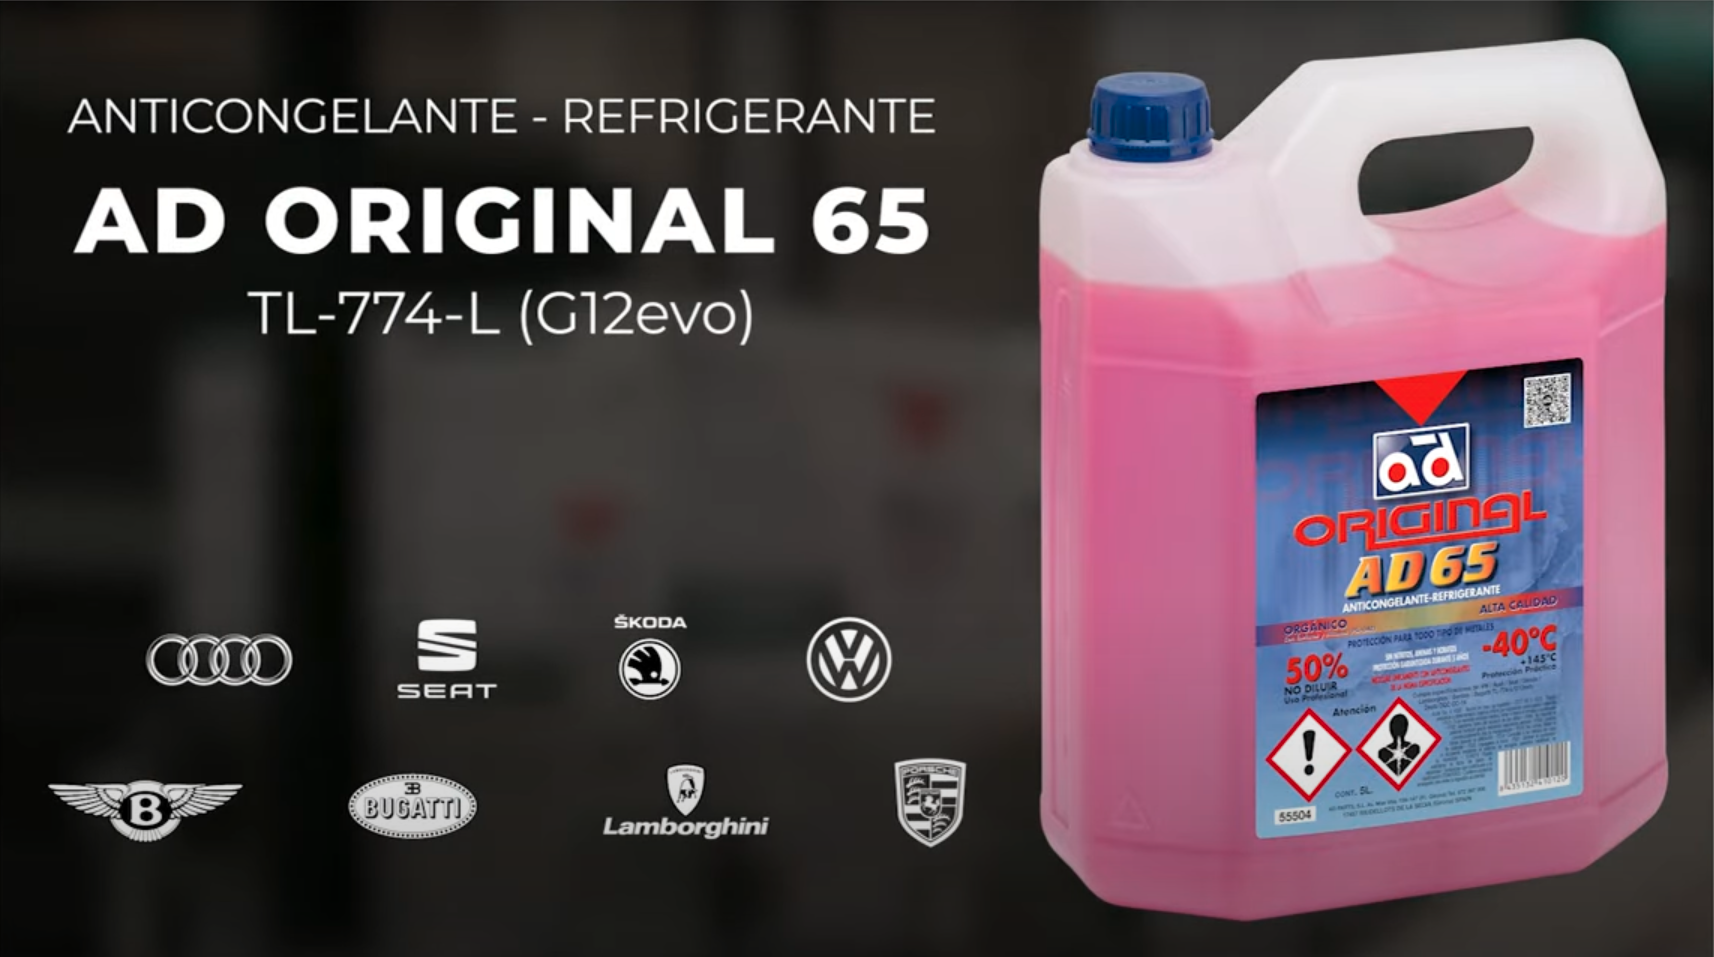 lubricante y anticongelante AD original 65